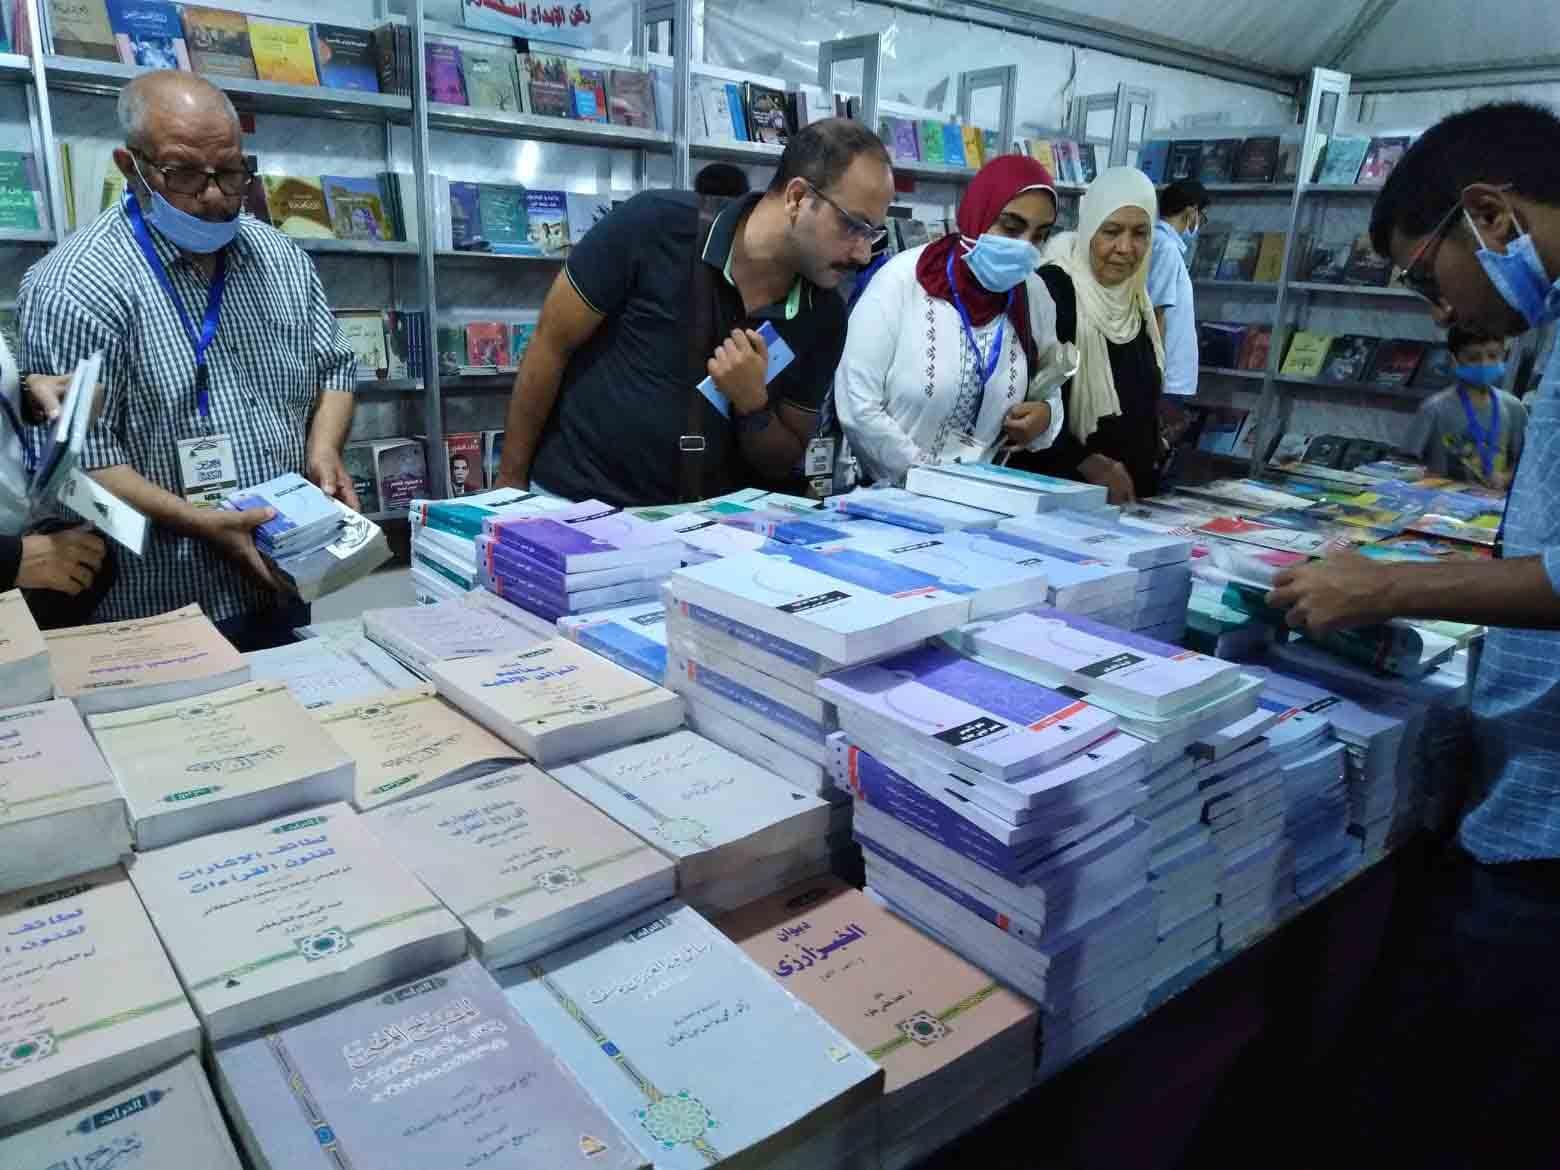 معرض الإسكندرية للكتاب